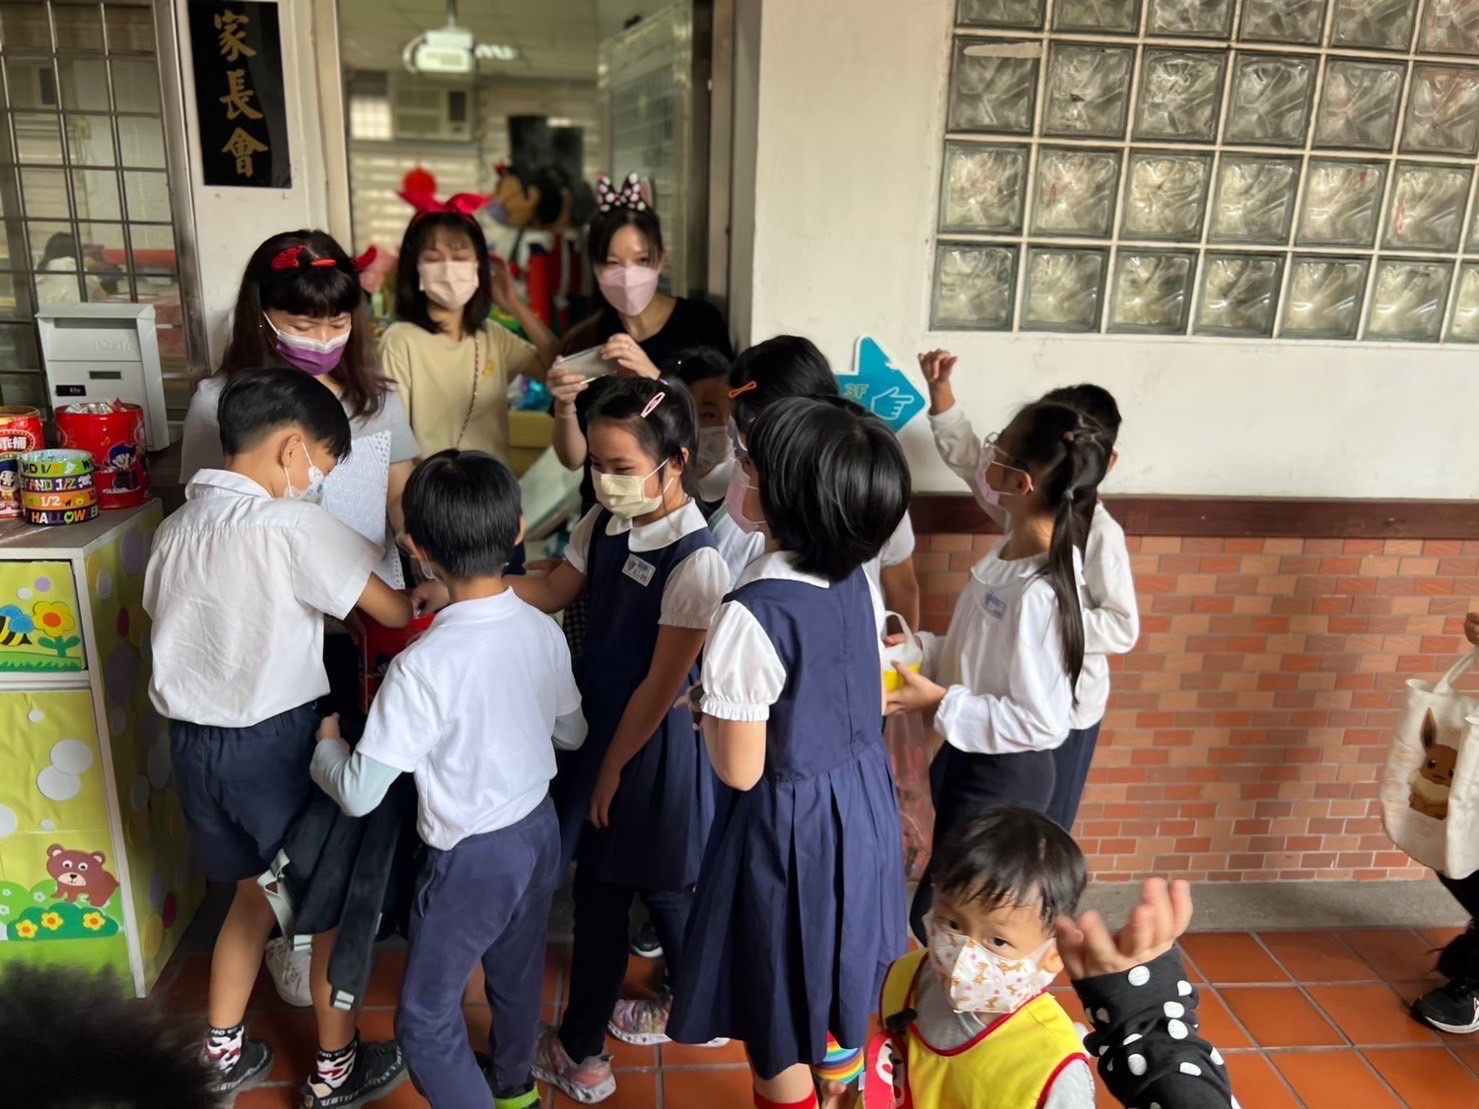 臺北市萬華區福星國小學生家長會活動服務組與學生互動生活照